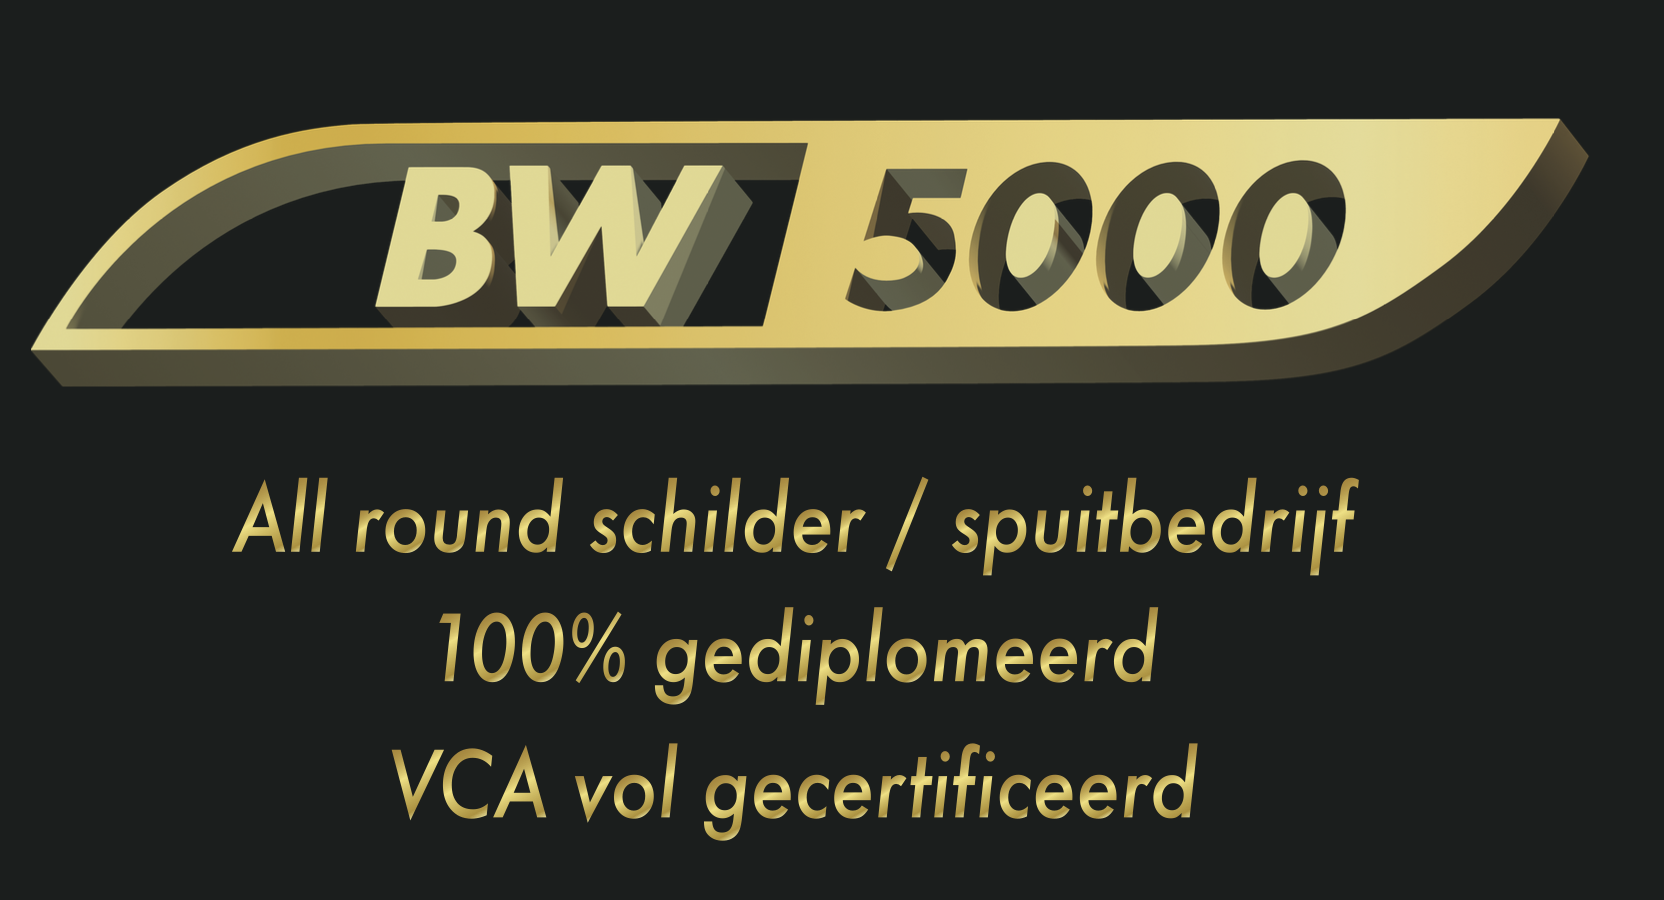 BW5000